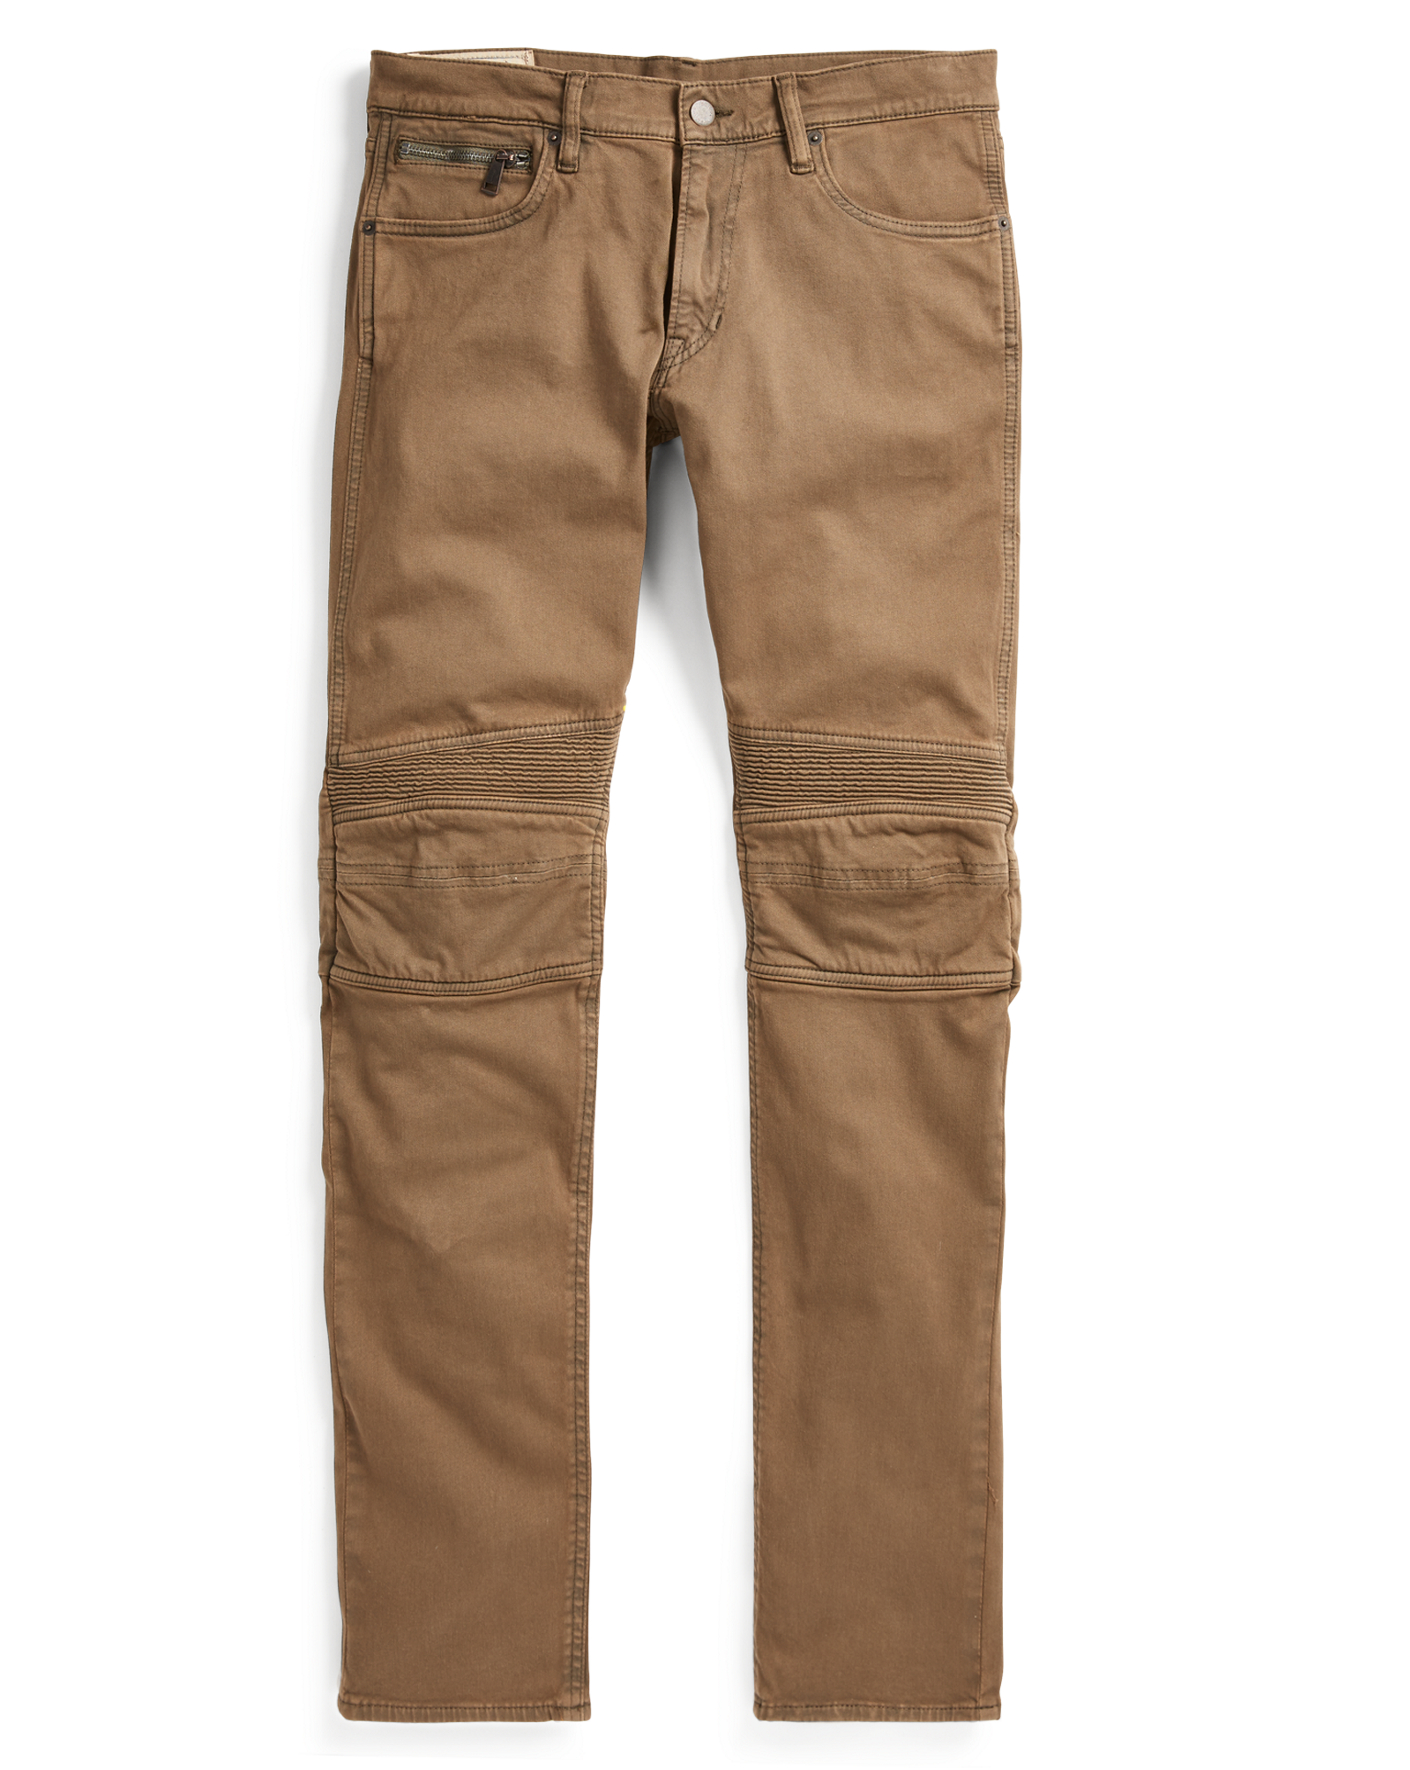 Men's Pants - Jeans, Cargo, Khaki, Corduroy | Ralph Lauren